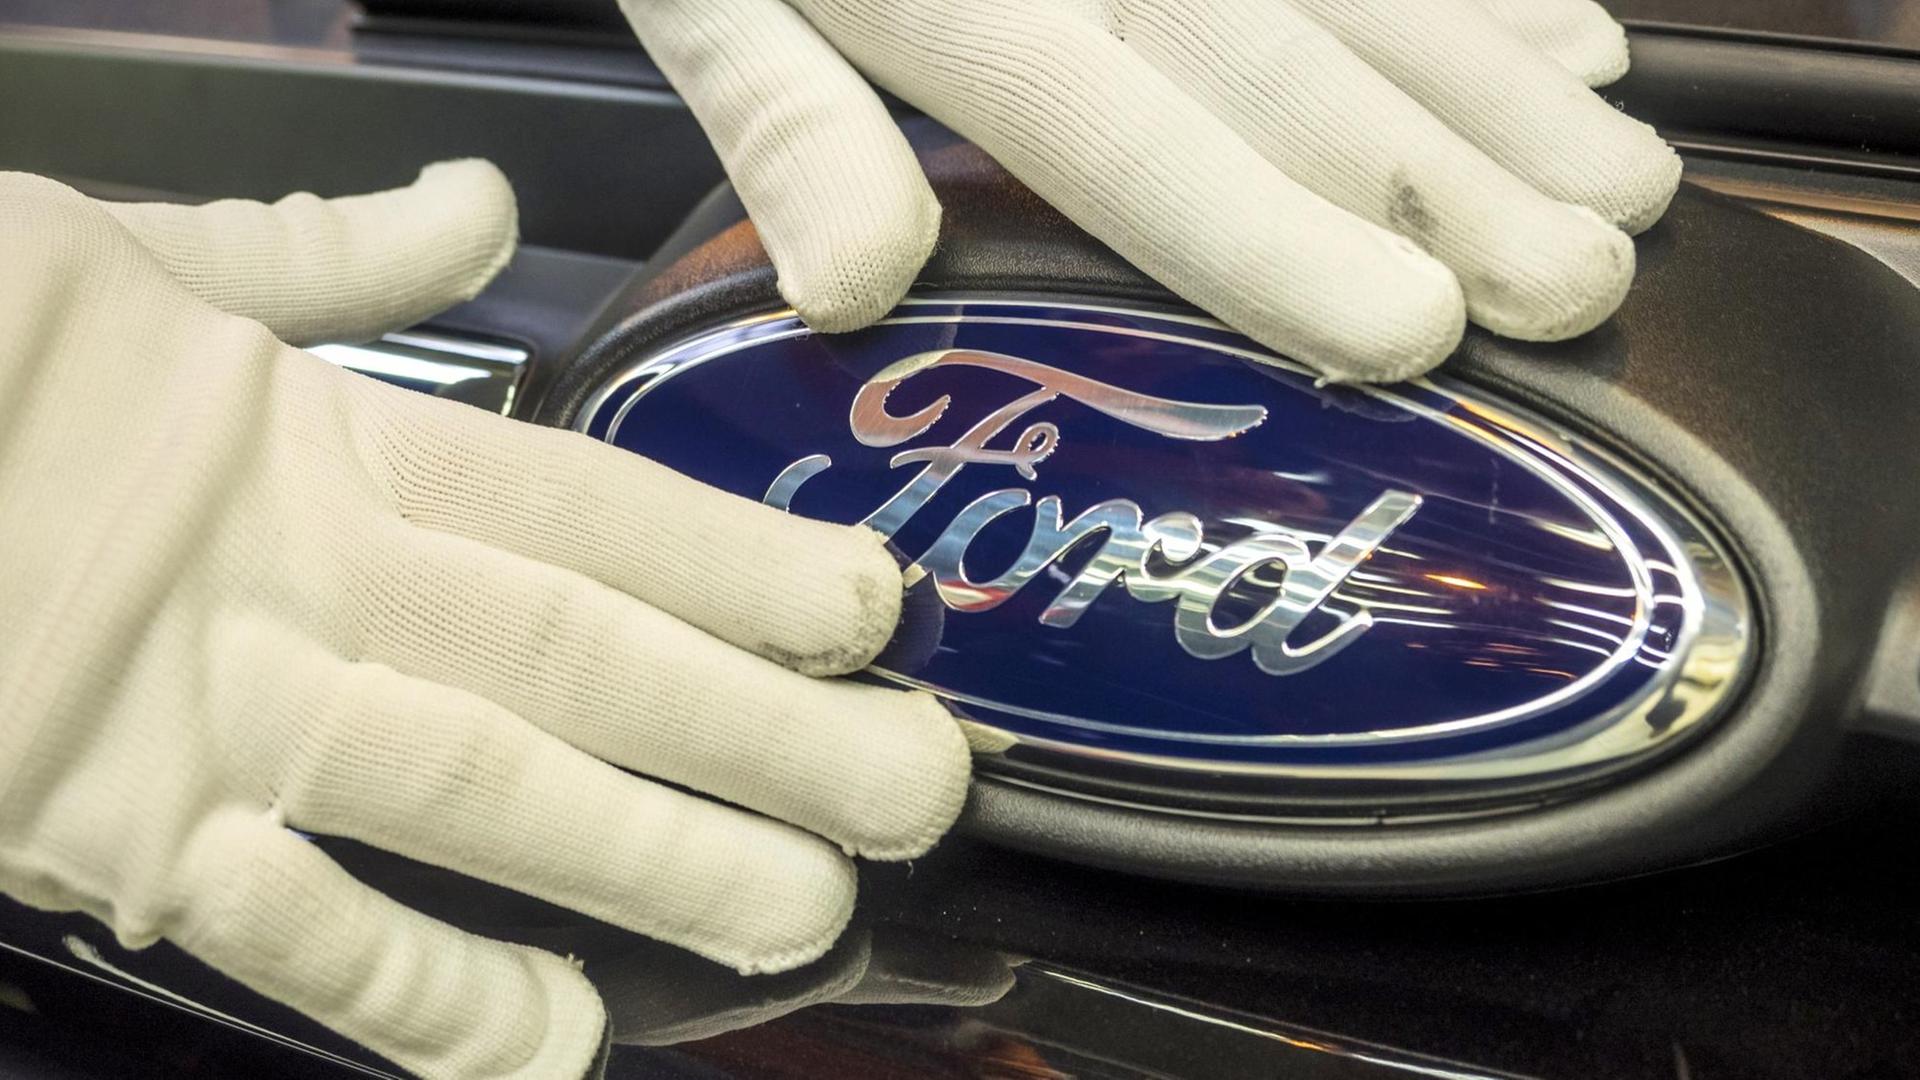 Das Logo des Autobauers Ford.